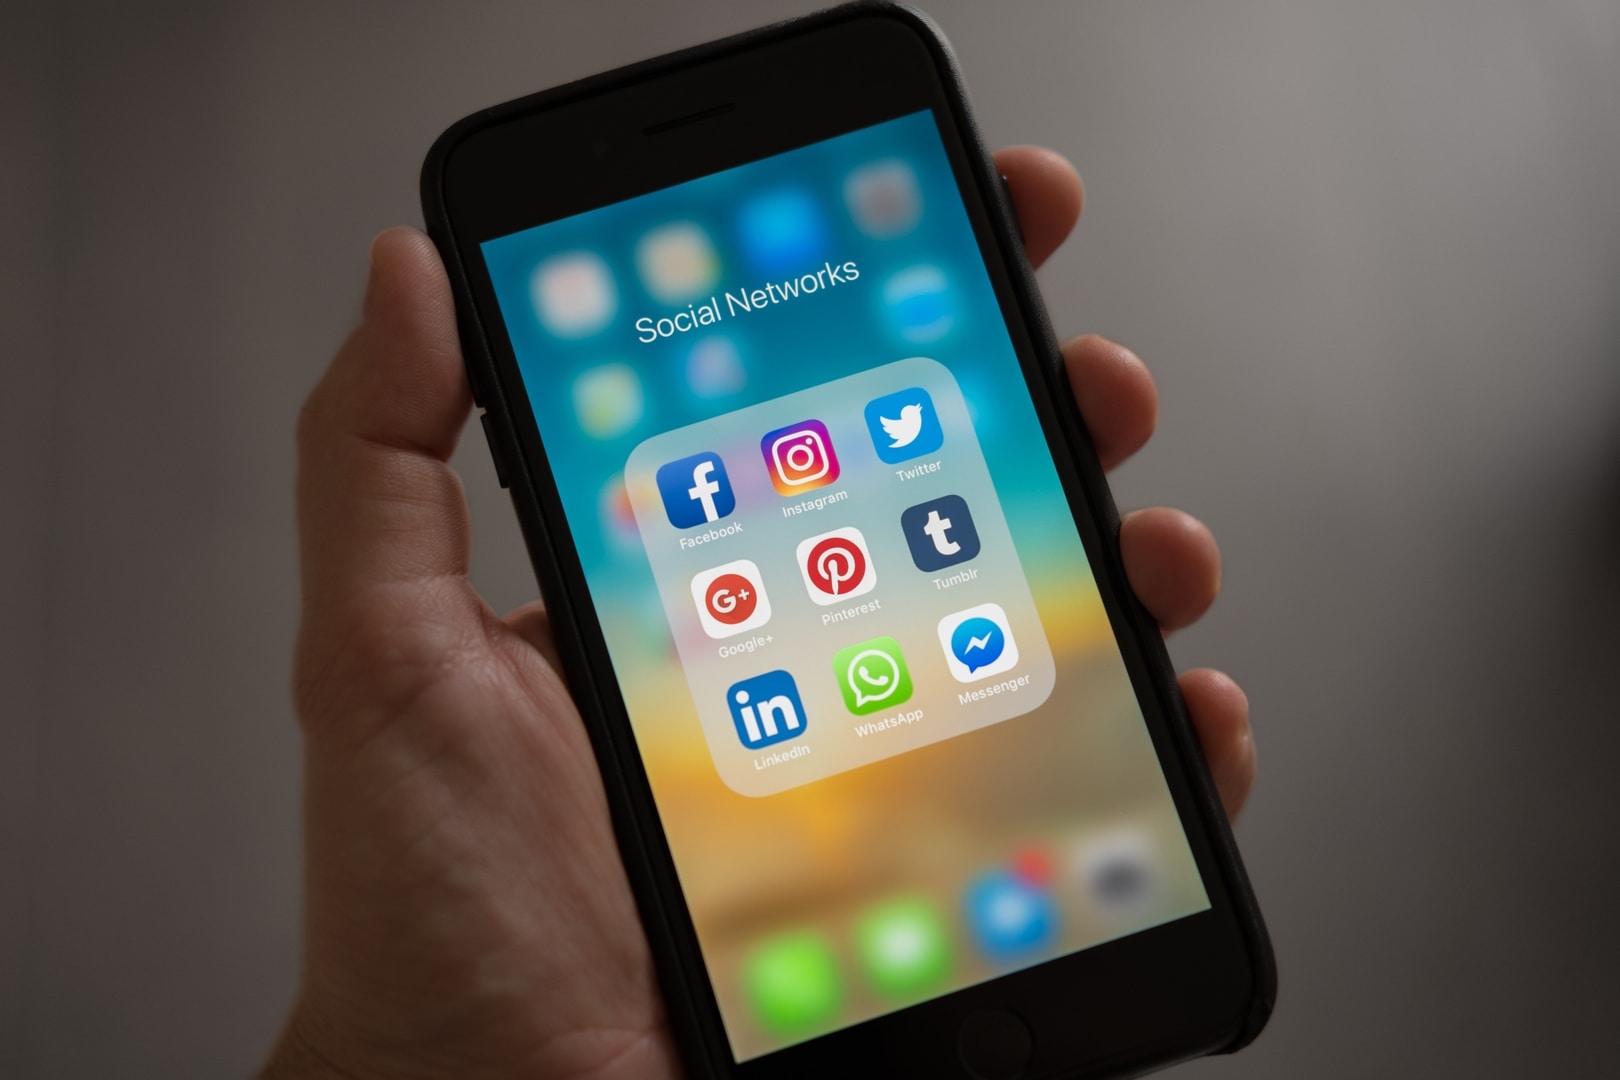 A imagem mostra a tela de celular com as palavras social networks (redes sociais) e os ícones de diversas redes sociais, sendo eles - Facebook, Instagram, Twitter, Pinterest, Tumblr, Google+, LinkedIn, WhatsApp e Messenger.